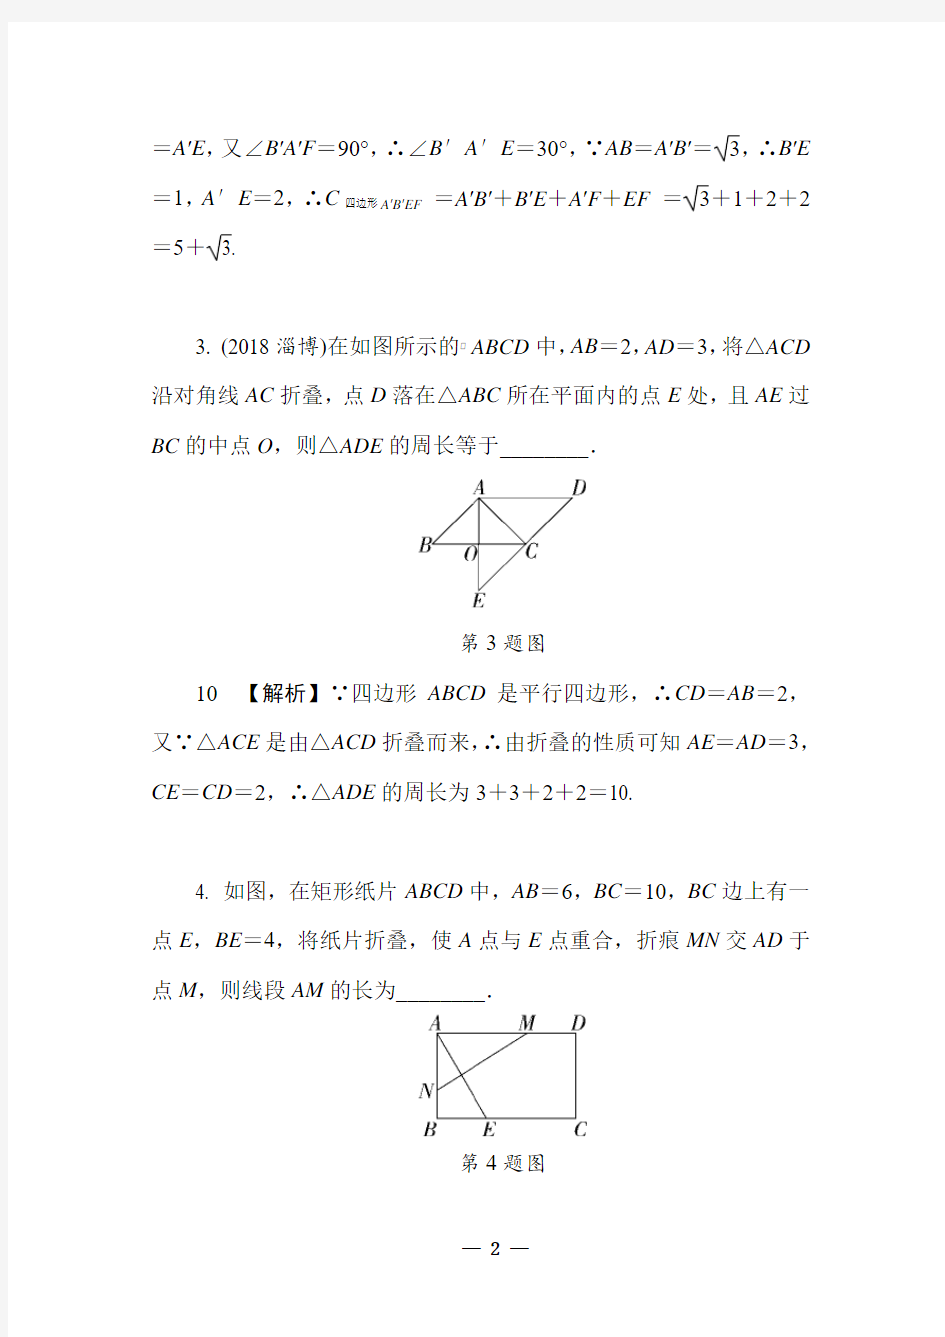 2019中考数学专题汇编全集 几何图形的折叠(10道)